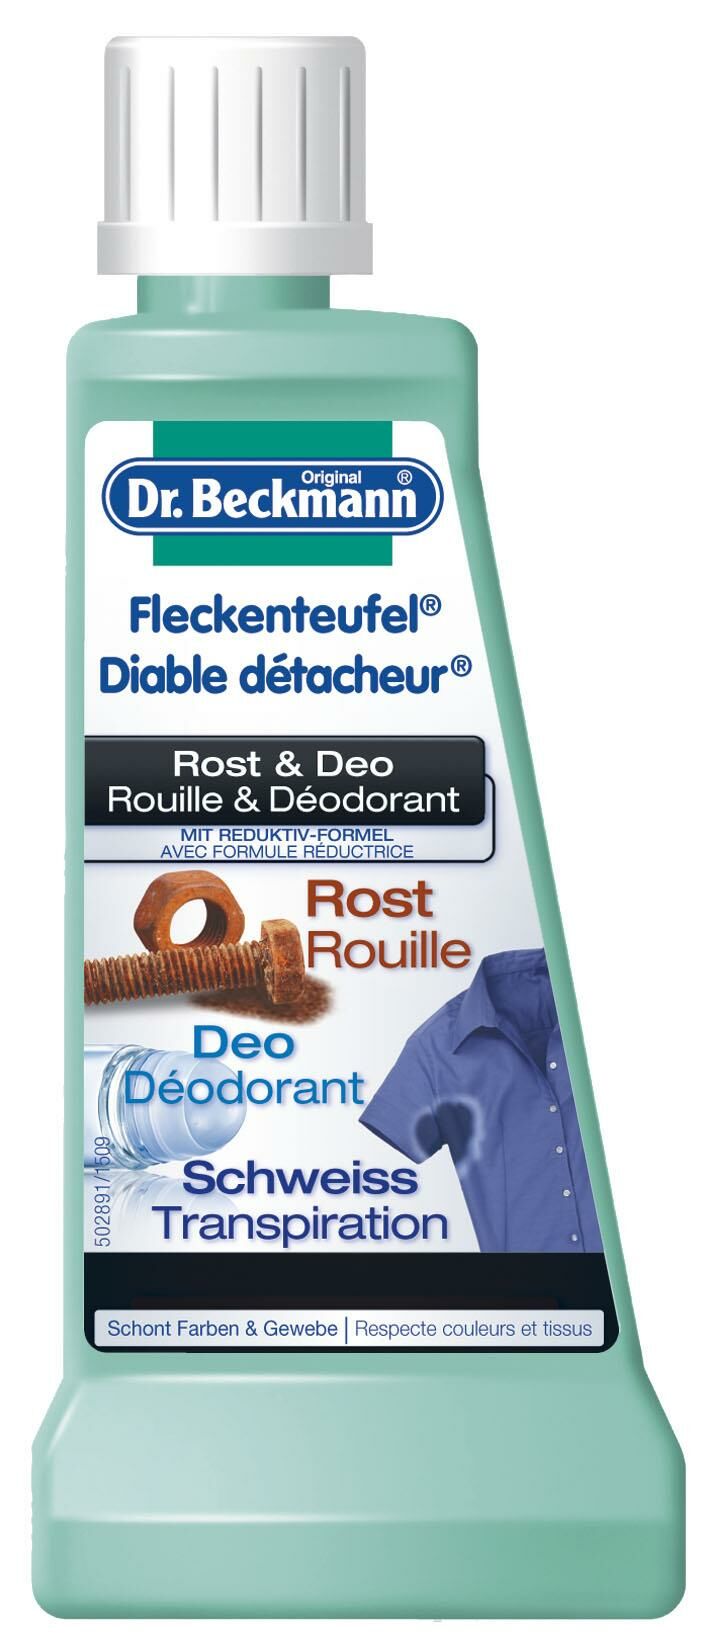 Dr Beckmann diable détacheur rouille&déodorant 50 ml à petit prix